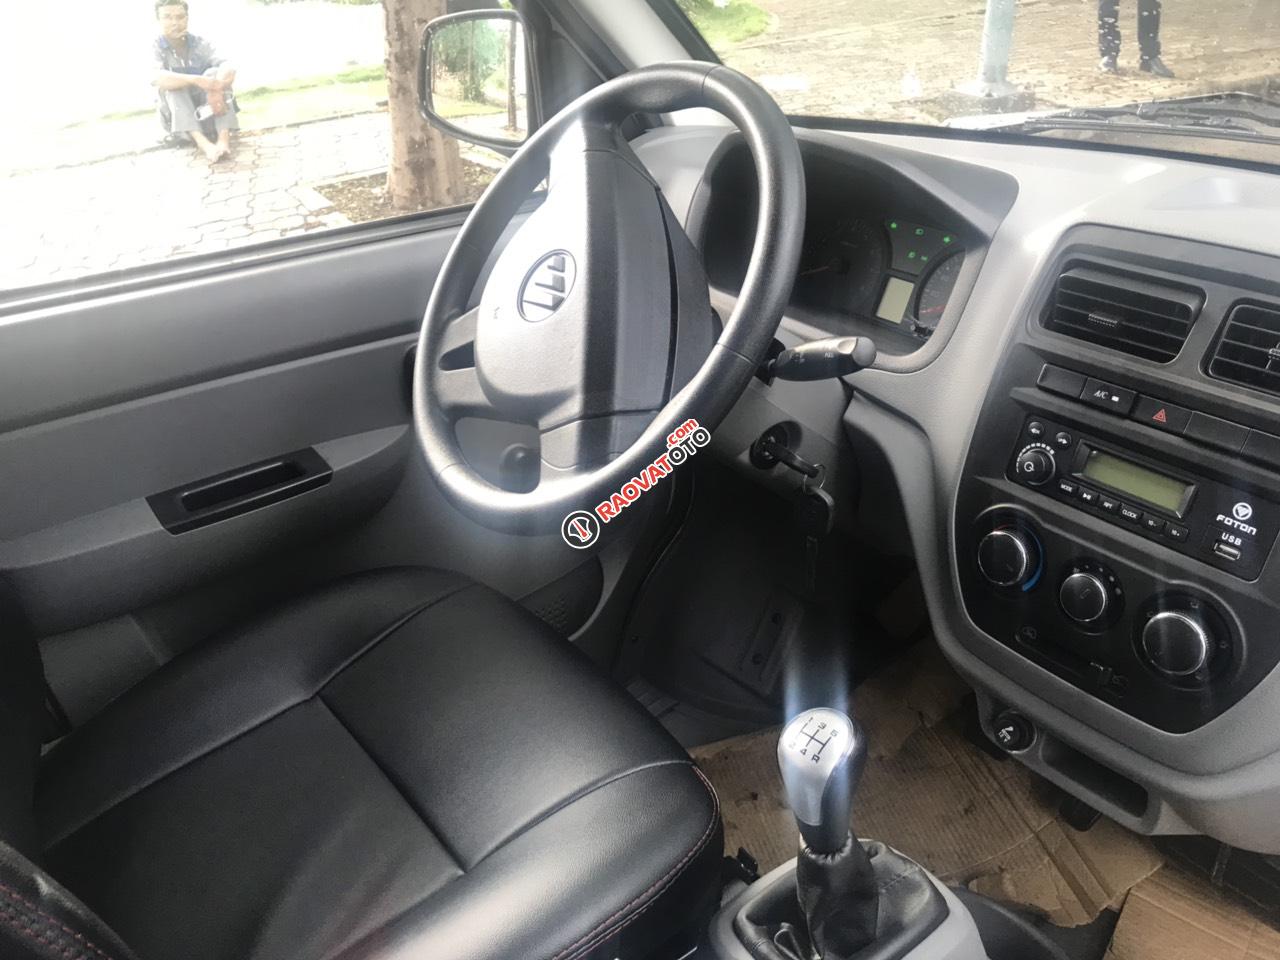 Bán xe ô tô tải, nhãn hiệu Thacco Foton 990kg, giá tốt cạnh tranh 2019-4